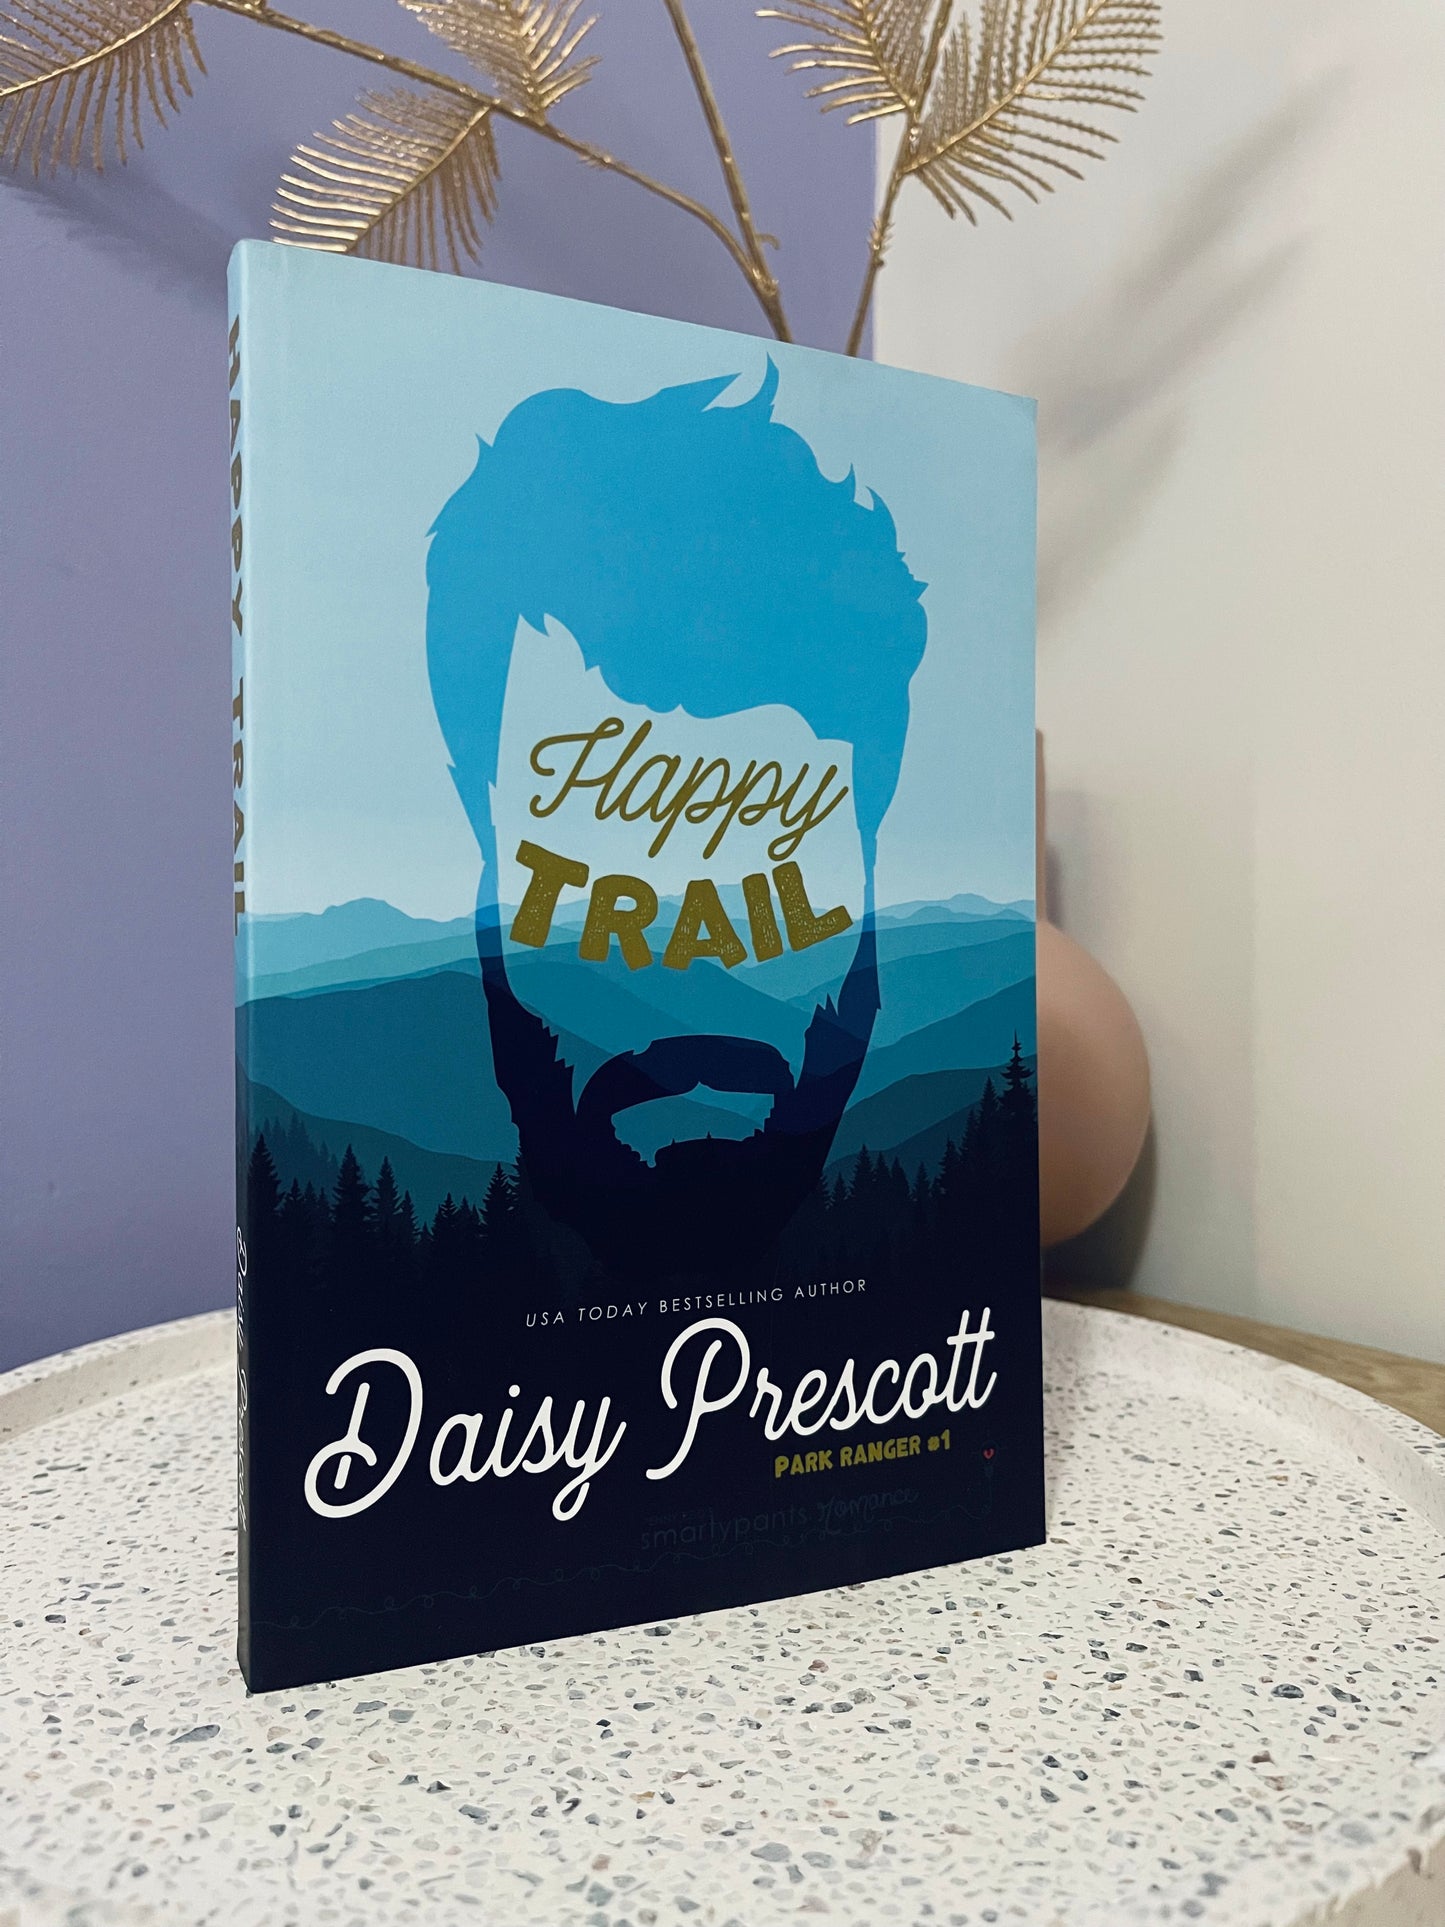 Happy Trail by Daisy Prescott (Park Ranger Book 1)